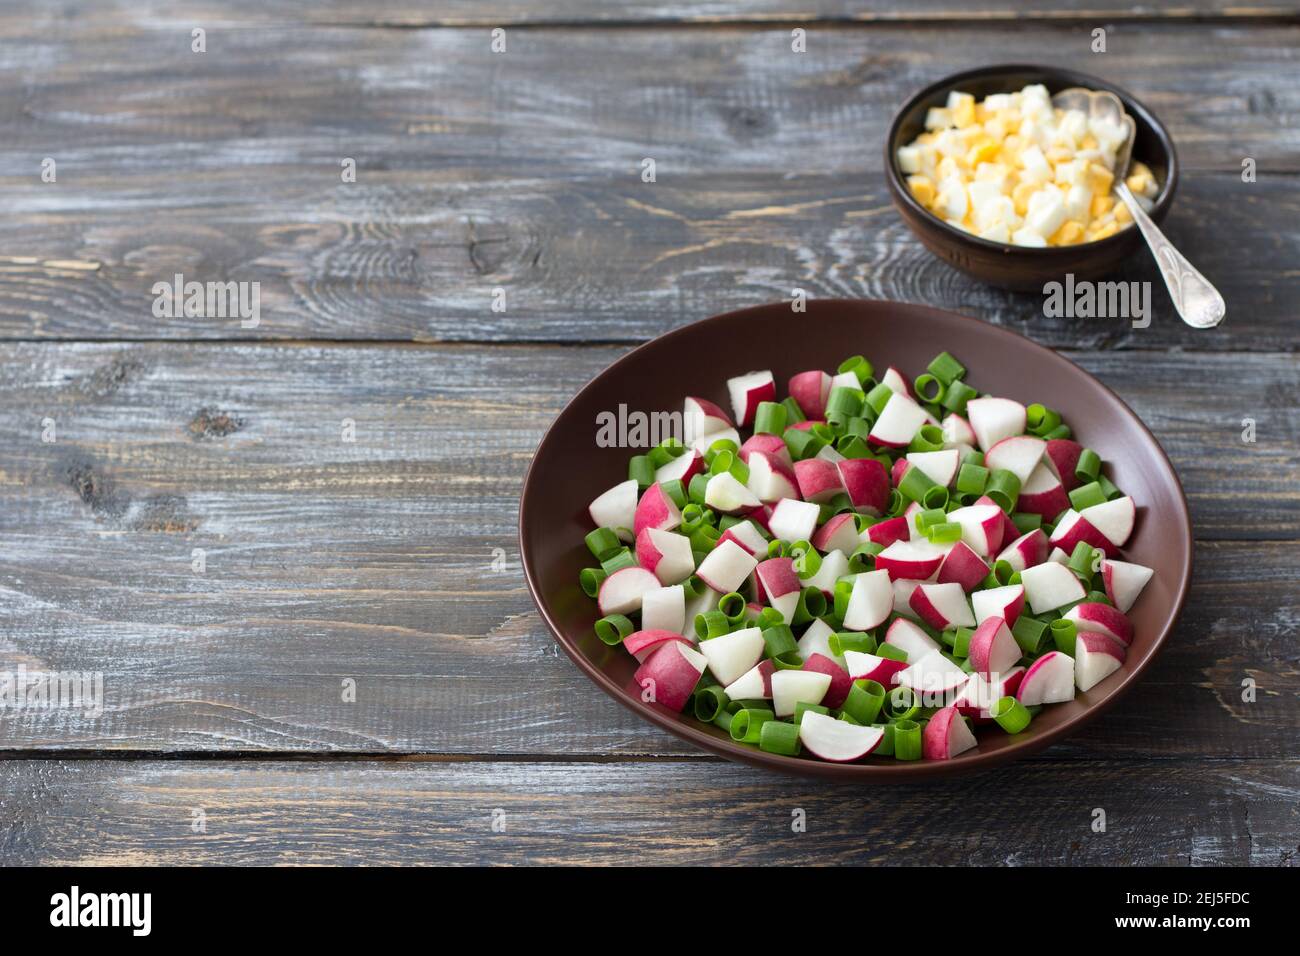 Salade de radis frais avec oignons verts et œufs durs sur fond de bois, style rustique. Délicieux plats faits maison Banque D'Images